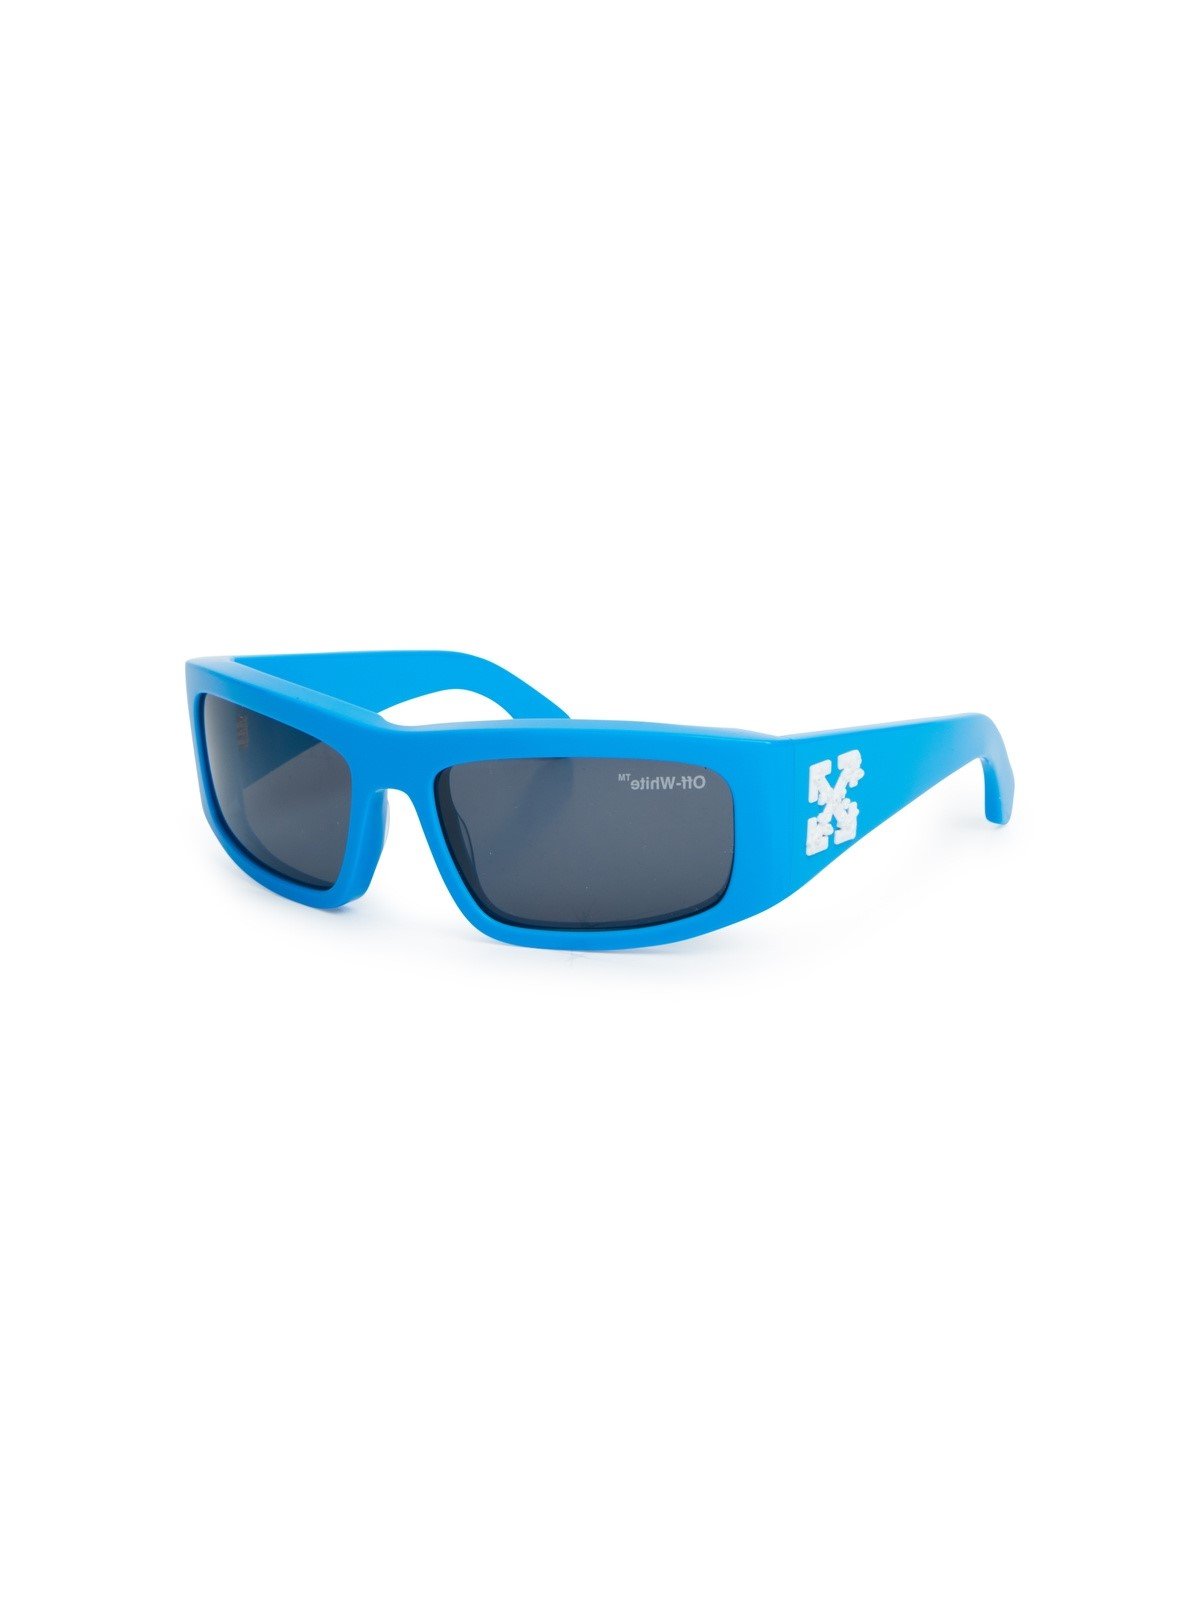 Off-White Rectangular Frame Sunglasses